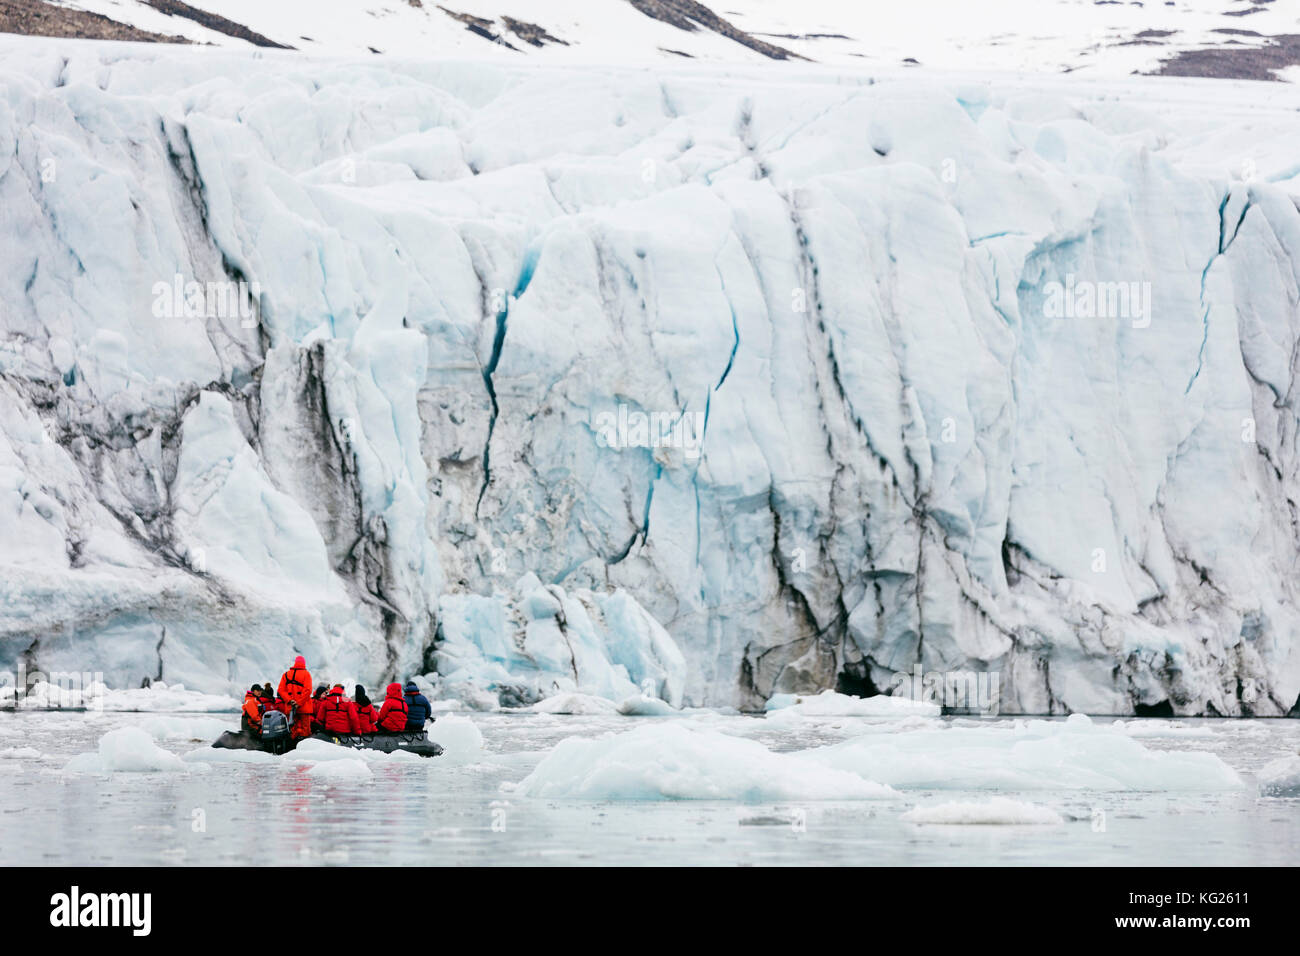 Voyage zodiac pour les touristes, hornbreen glacier, Spitsbergen, Svalbard, Norvège, Europe, de l'Arctique Banque D'Images